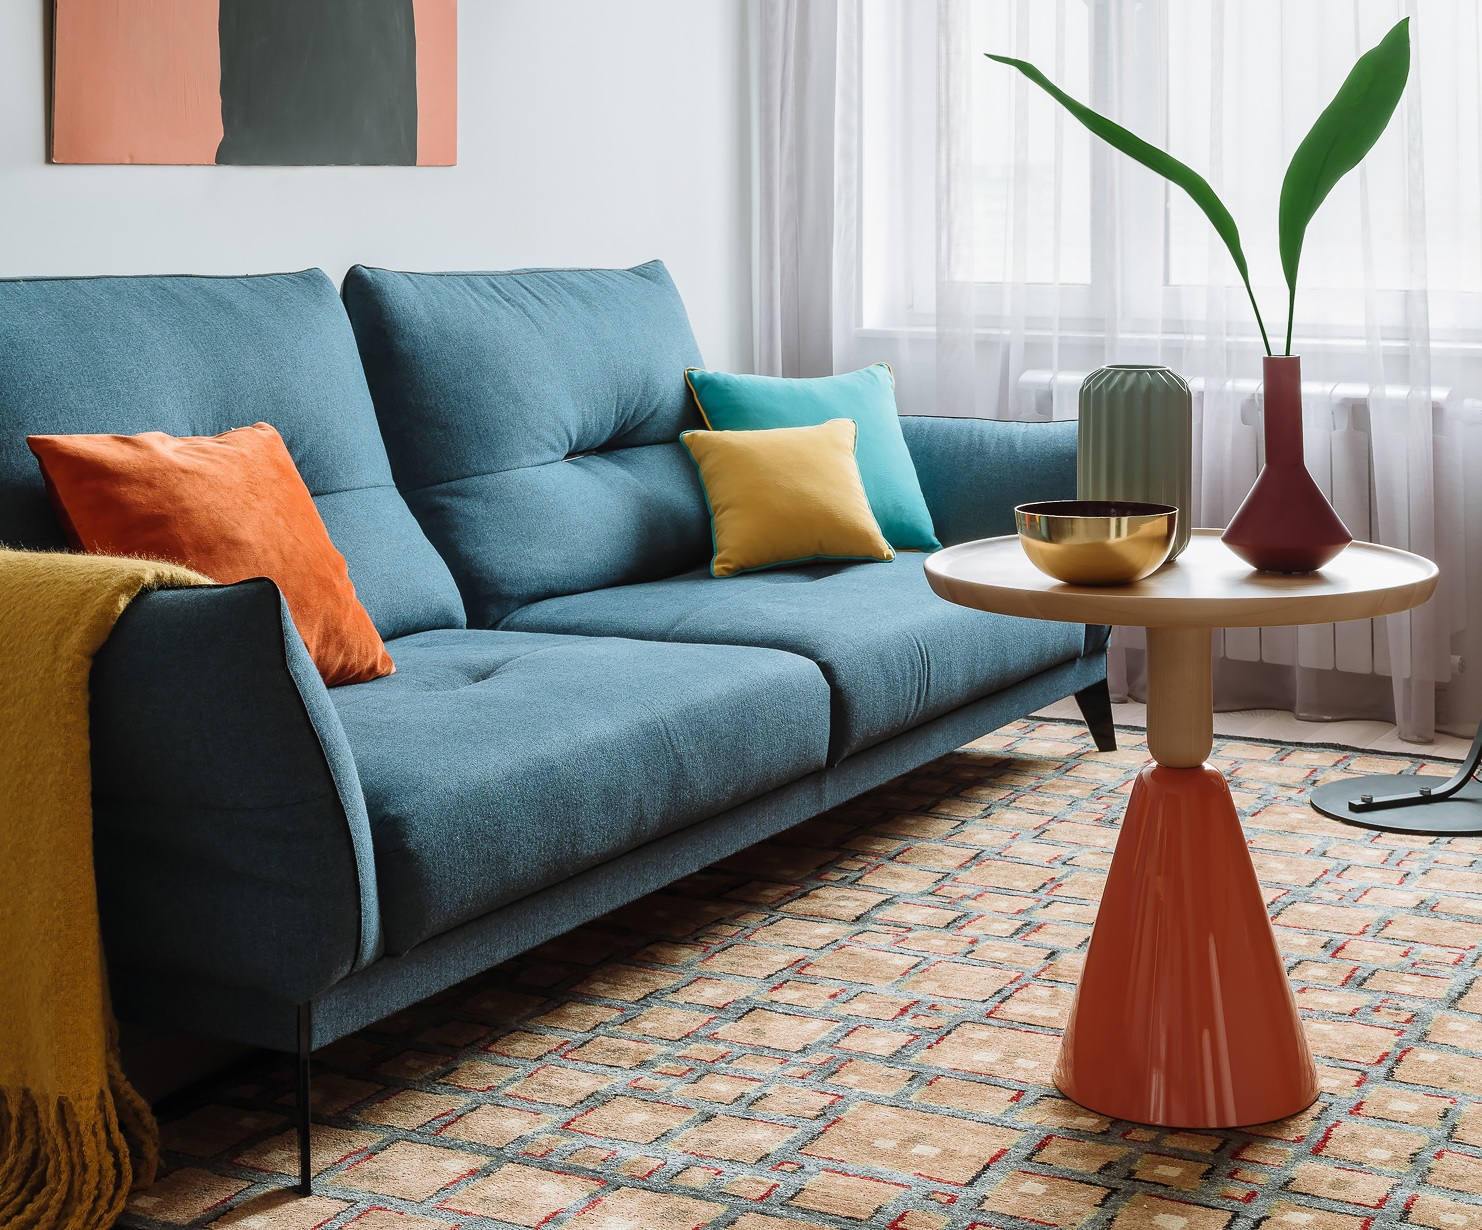 Bạn có thể nhanh chóng thay mới vải bọc ghế sofa và cả vỏ bọc những chiếc gối tựa trên đó bằng hoa văn và màu sắc nổi bật.